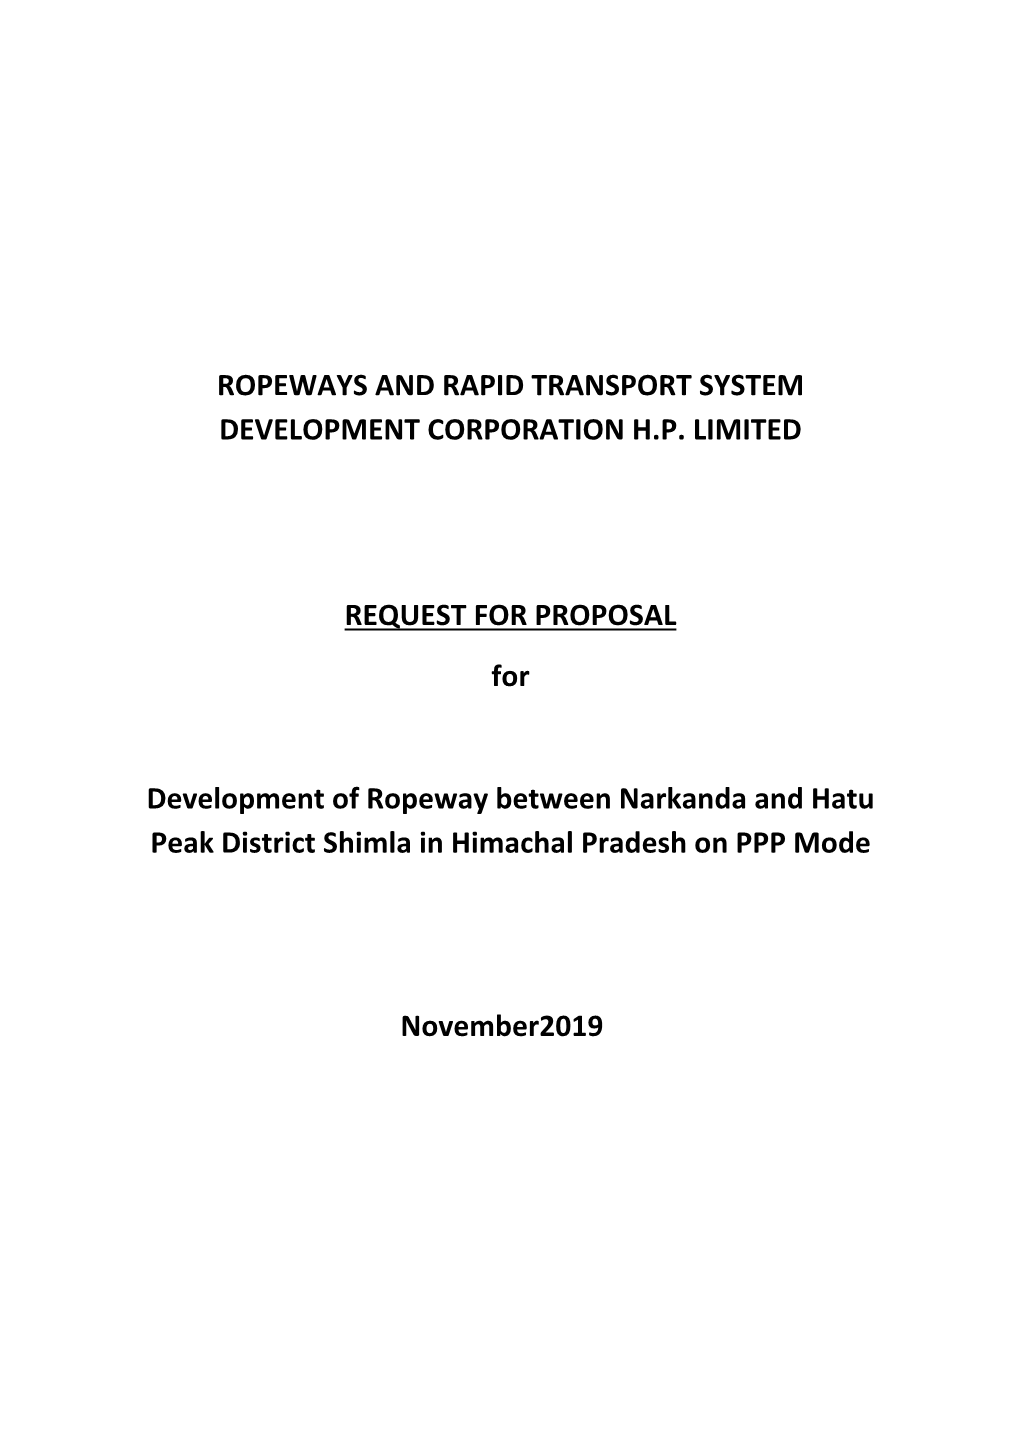 RFP for Development of Ropeway Between Narkanda and Hatu Peak